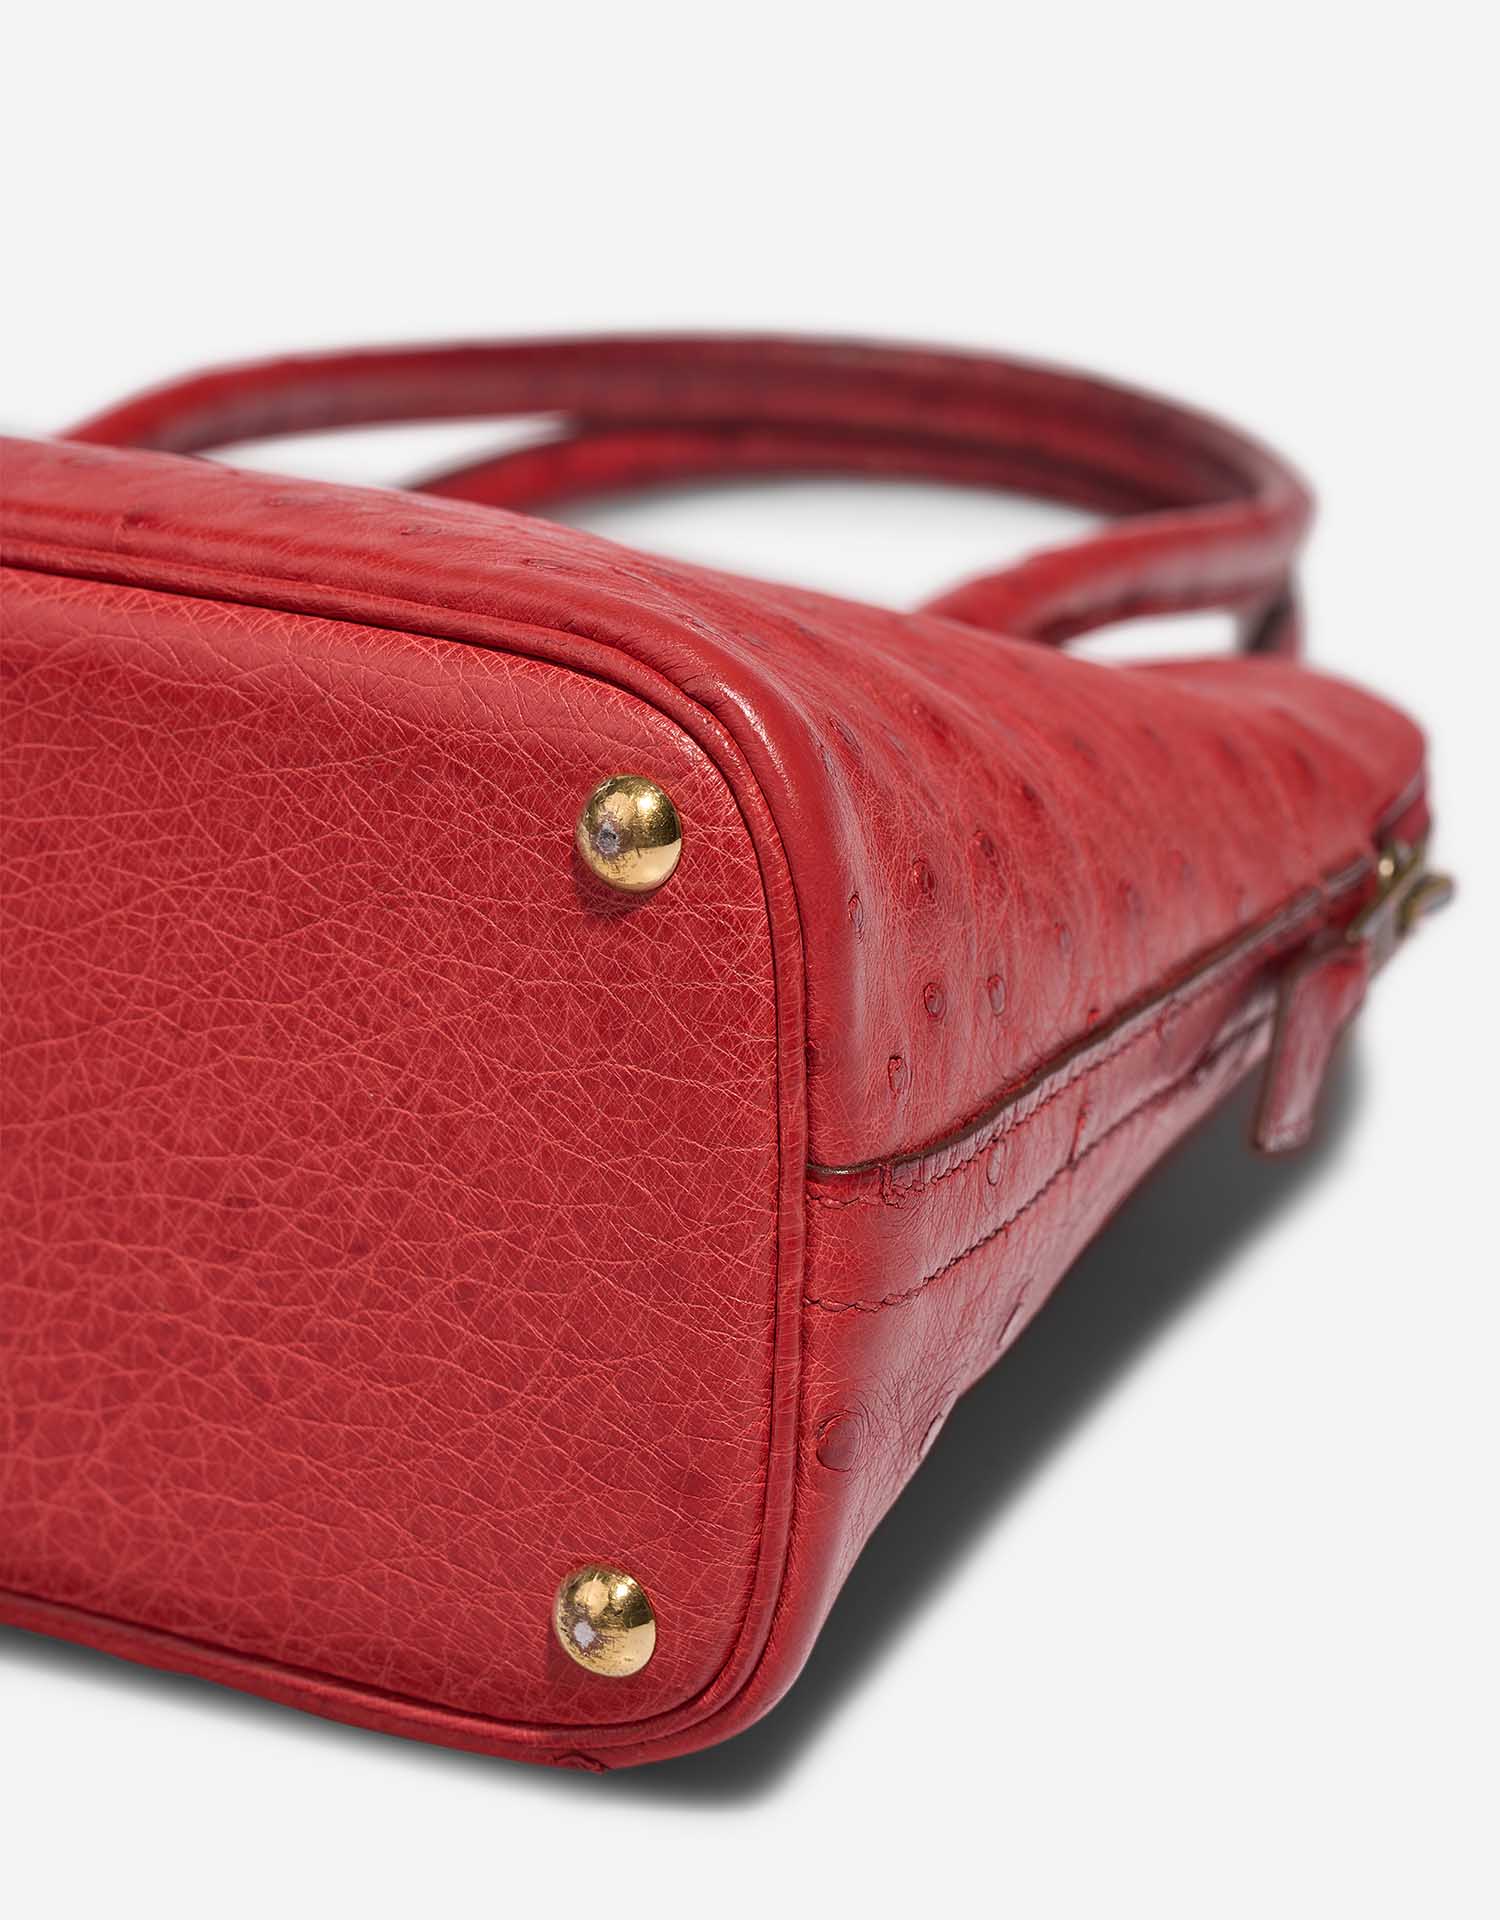 Hermès Bolide 27 RougeVif Gebrauchsspuren| Verkaufen Sie Ihre Designer-Tasche auf Saclab.com